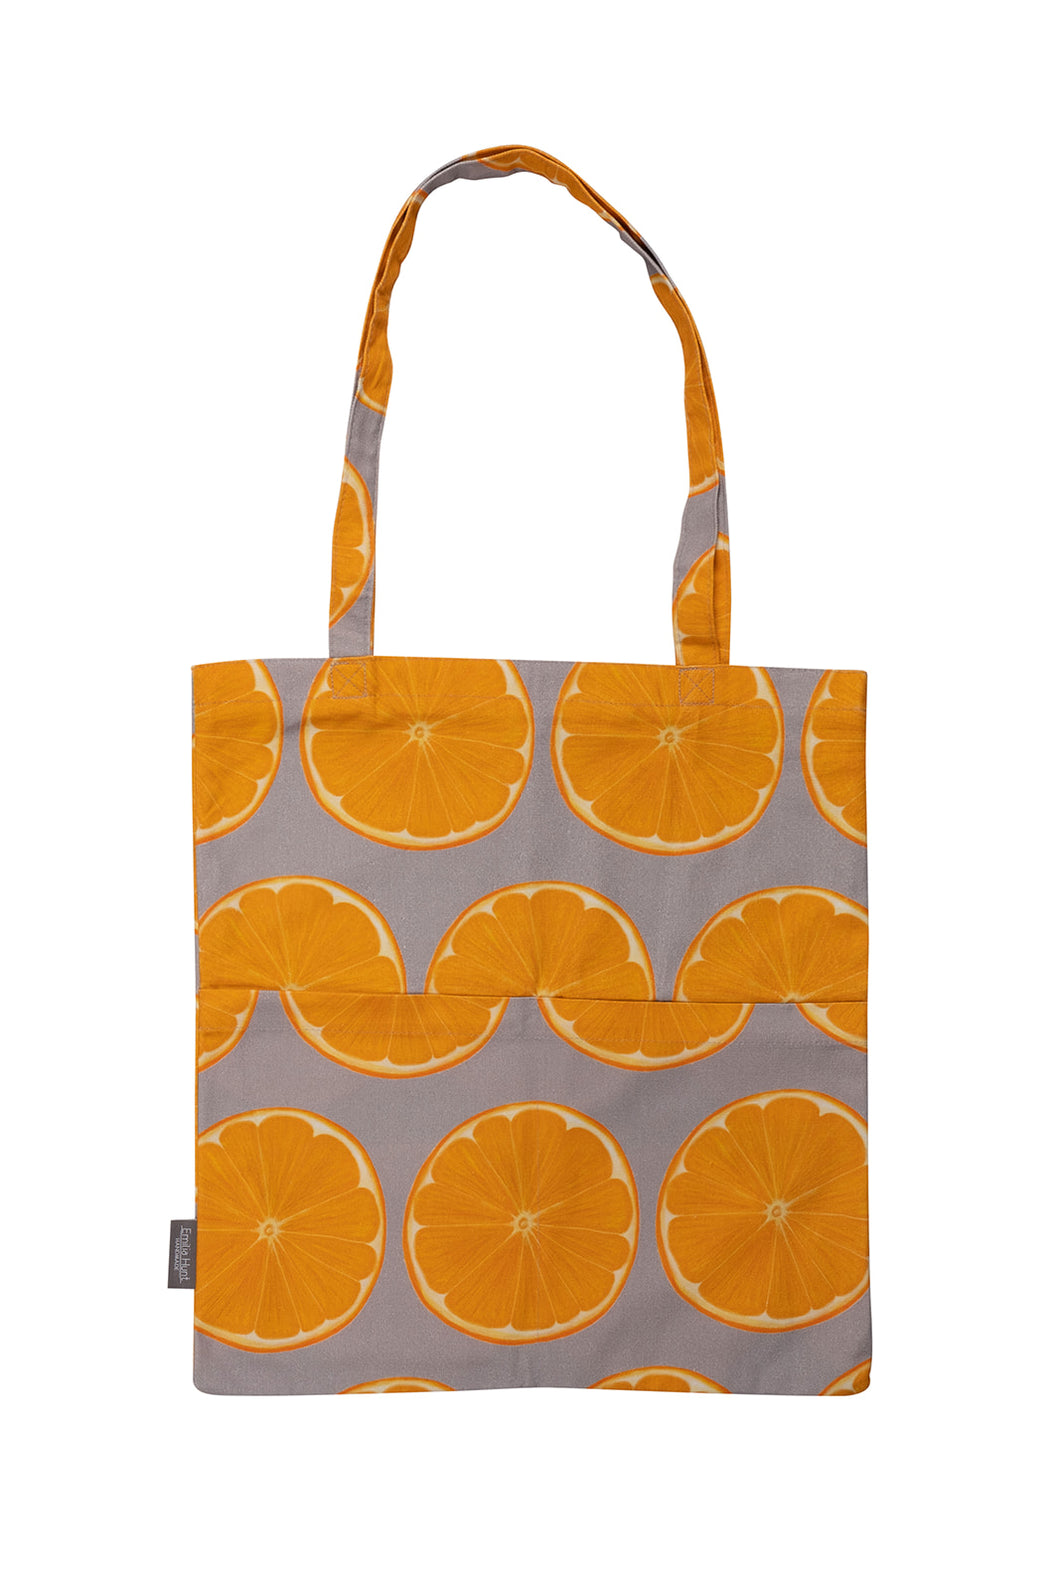 Orange Slice Tote Bag